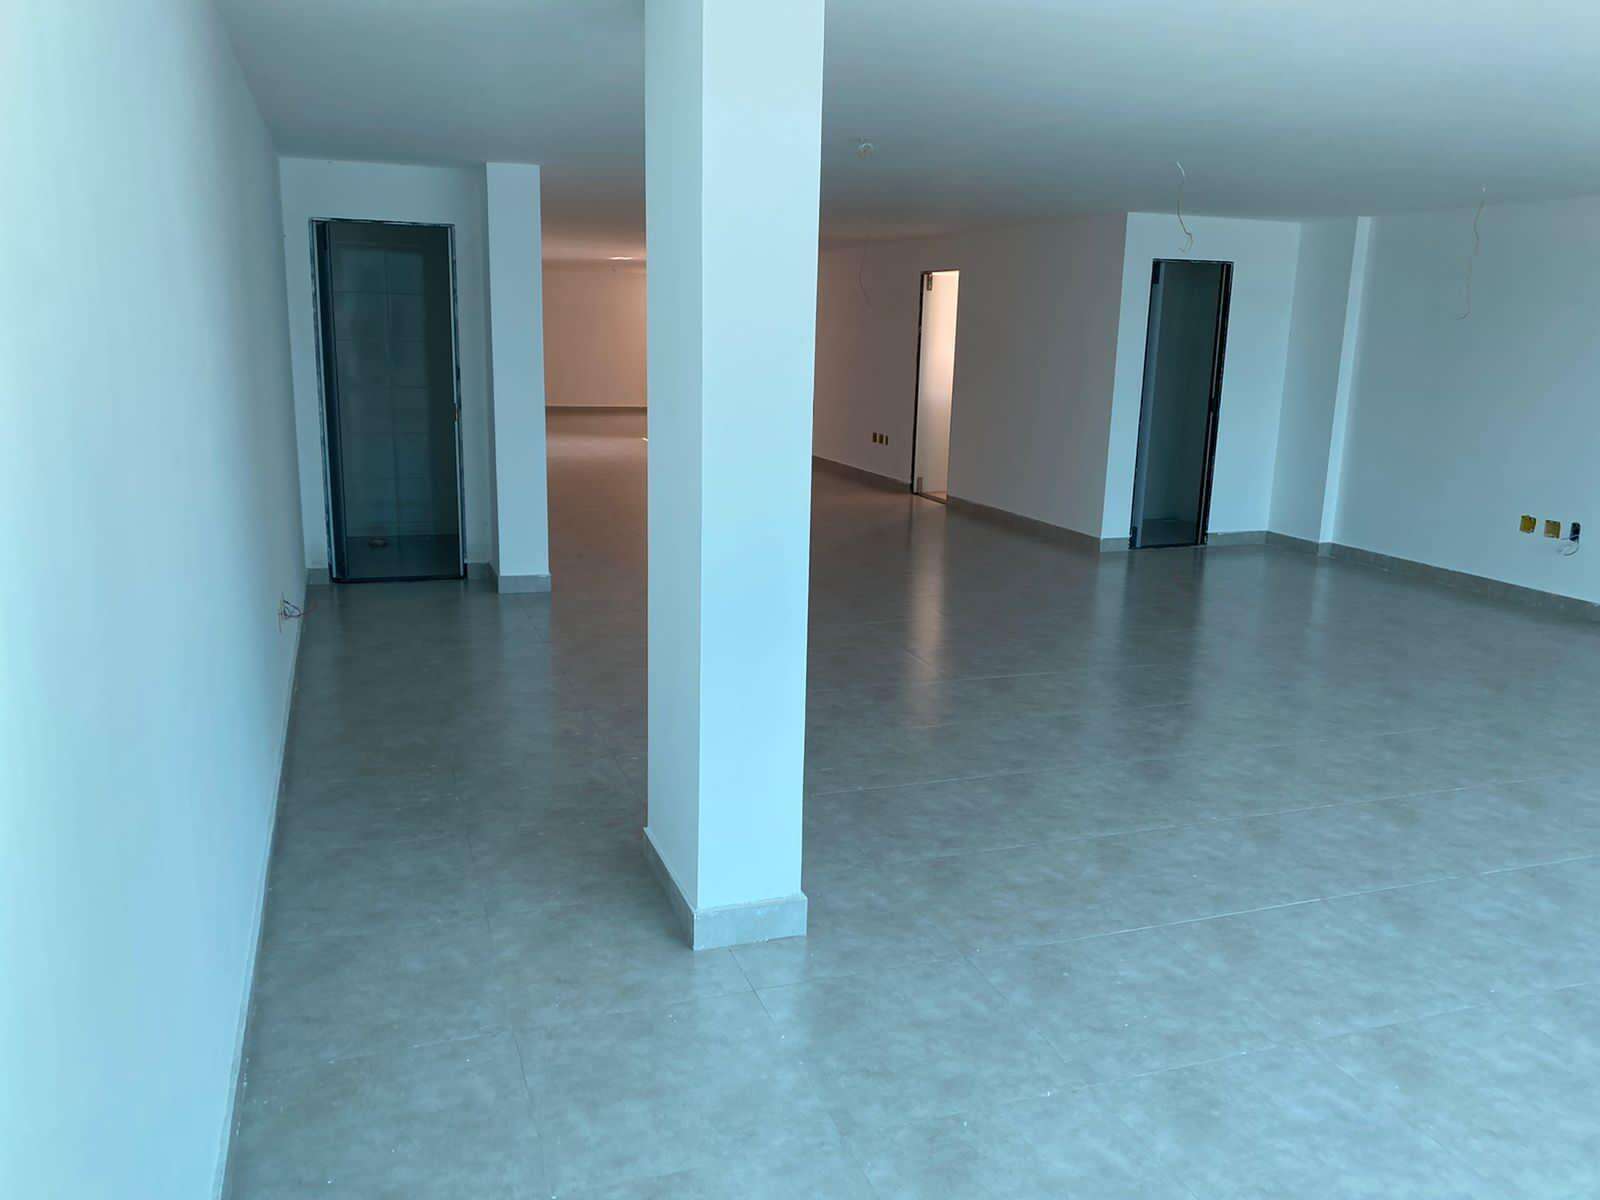 Sala para aluguel no Centro: f08d6e82-b-whatsapp-image-2021-09-29-at-15.52.11-1.jpeg